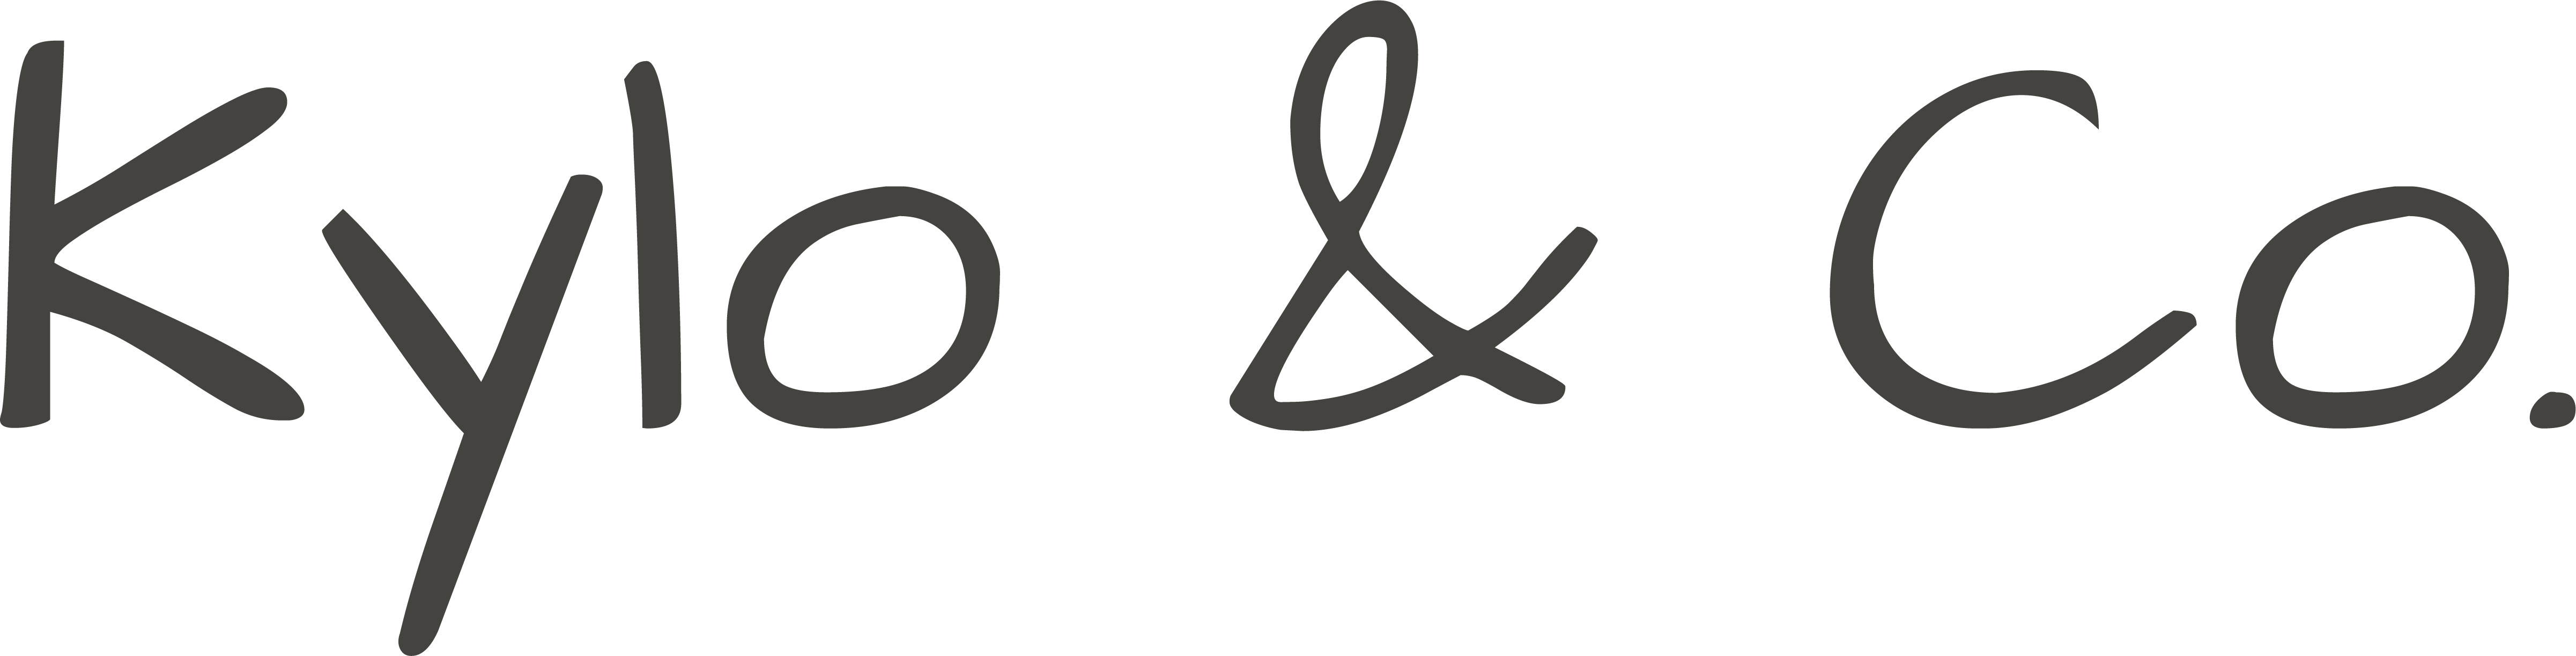 Kylo & Co Logo